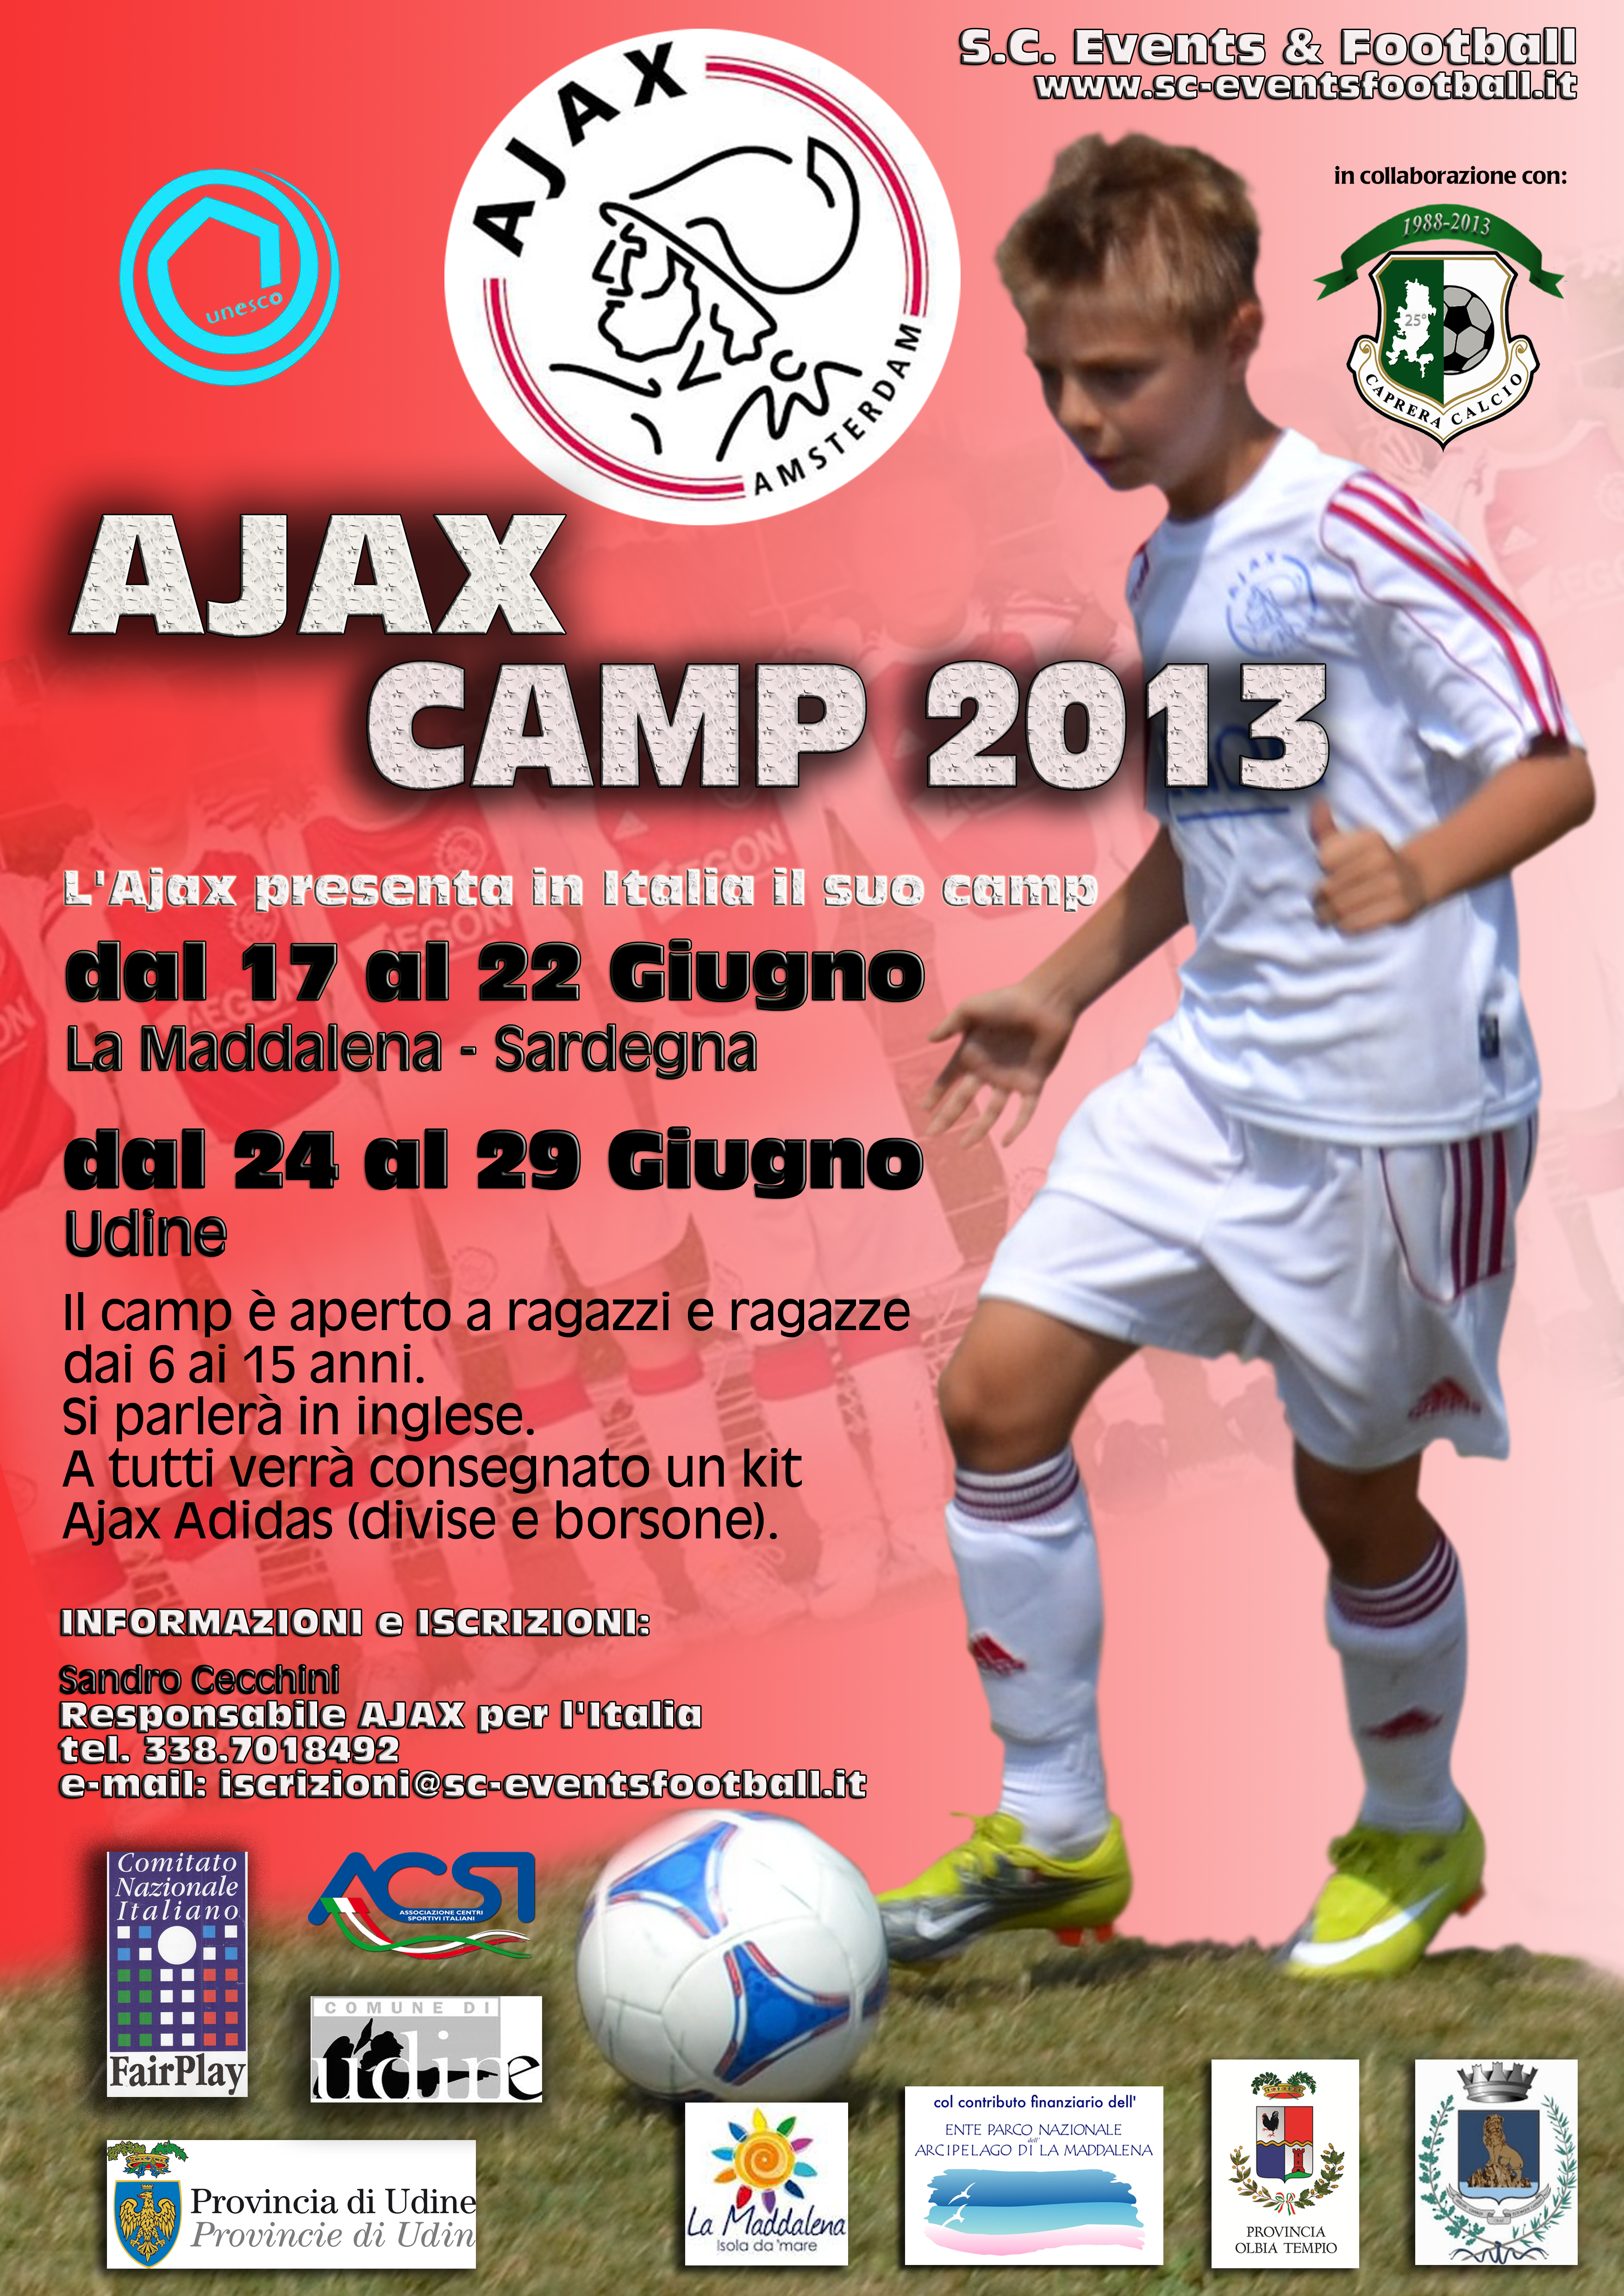 Grande successo dell’Ajax camp 2013 a La Maddalena